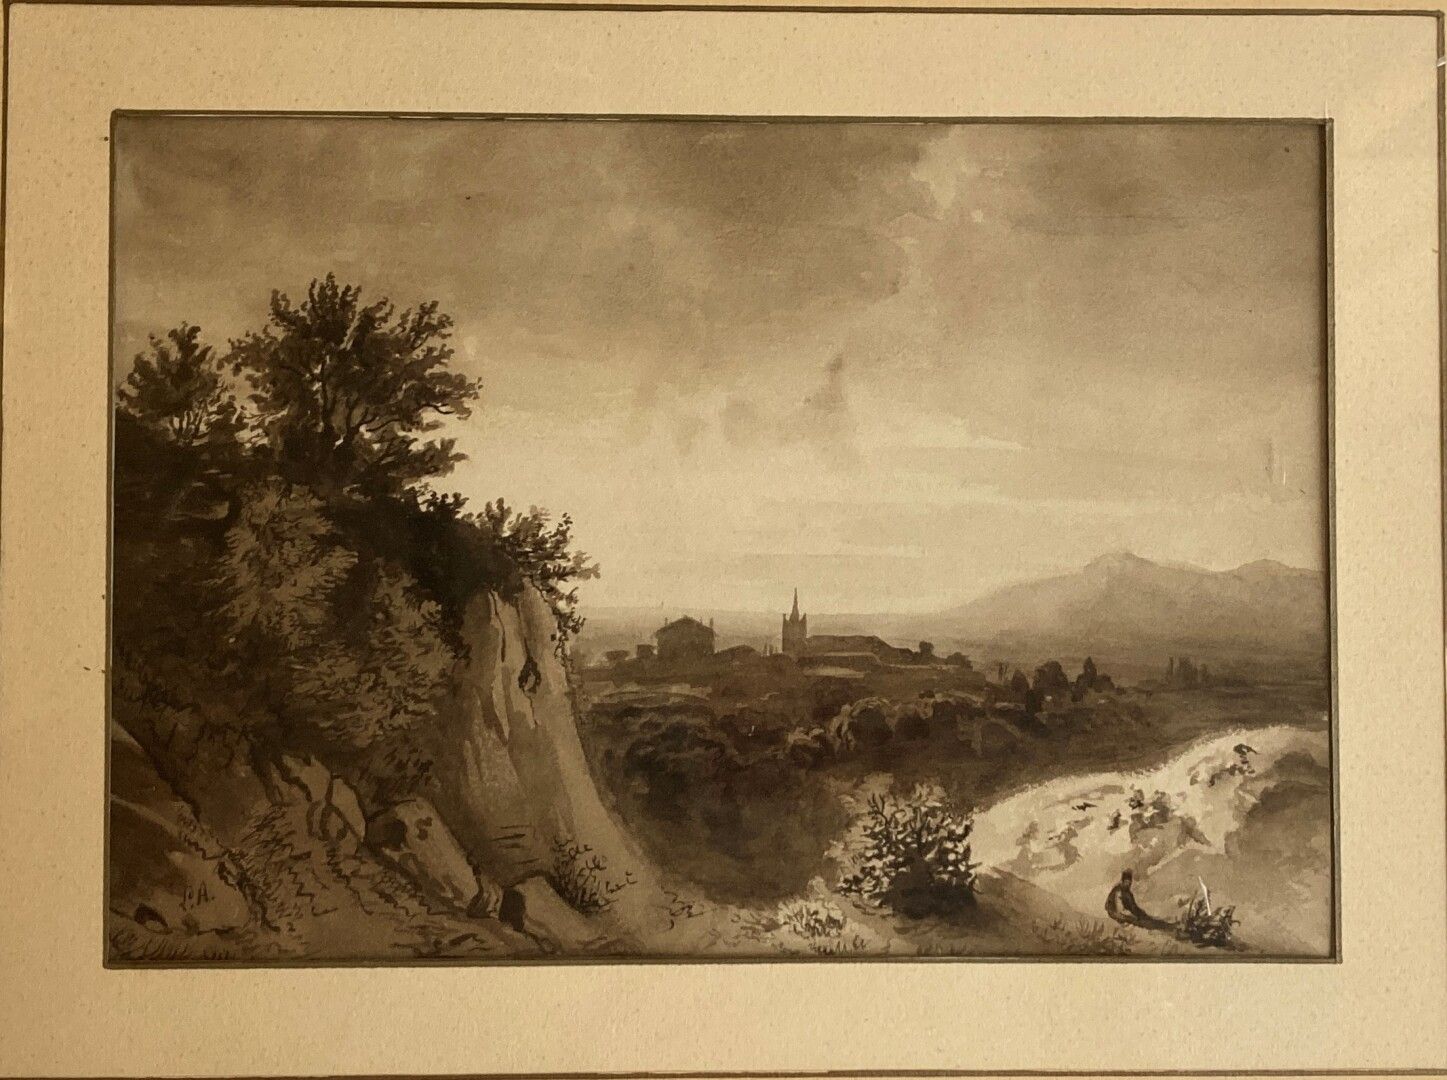 Null FRANZÖSISCHE SCHULE um 1840

Felsige Landschaft, ein Dorf in der Ferne

Sch&hellip;